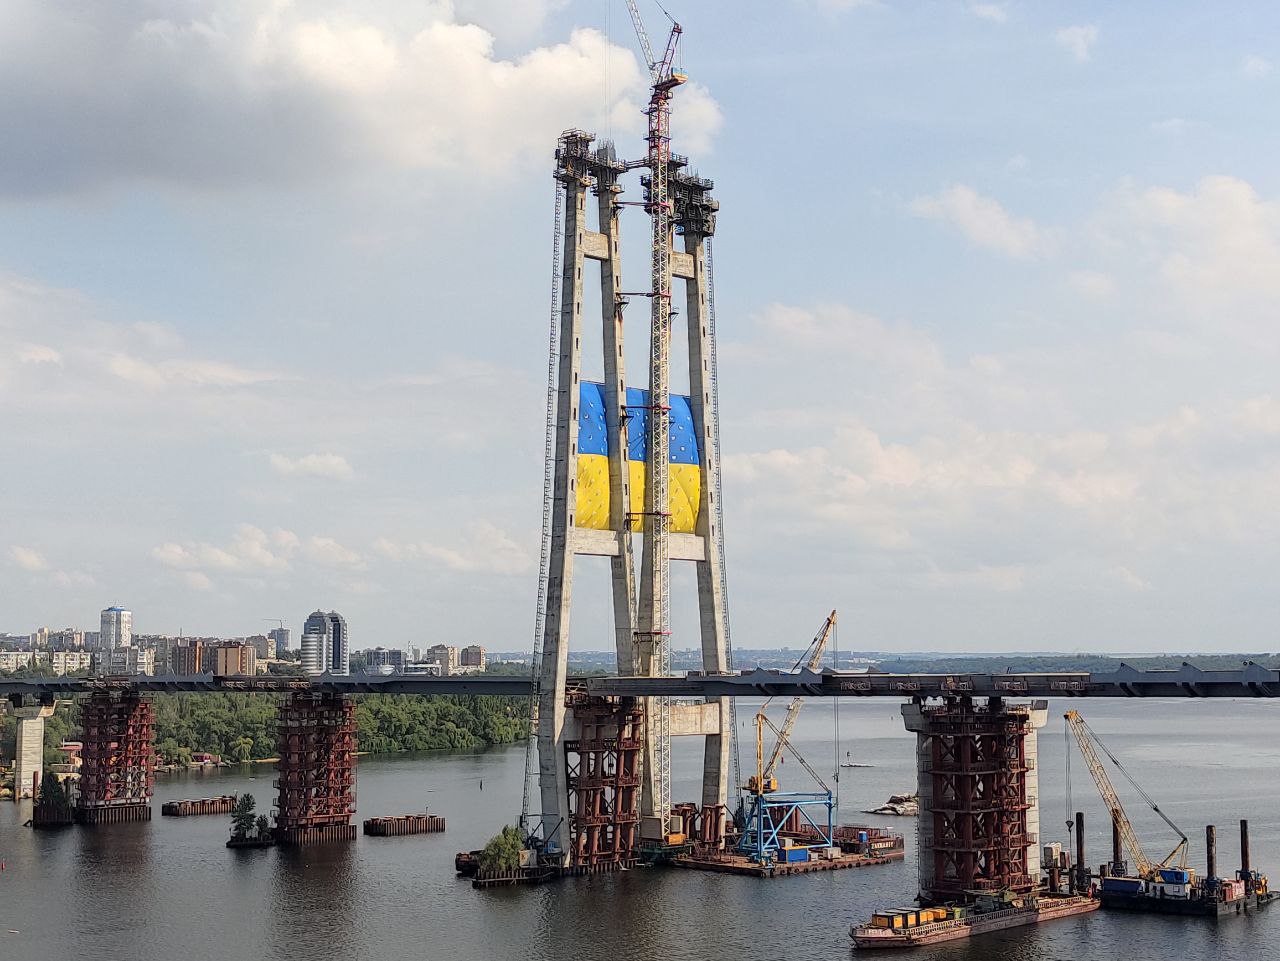 В Запорожье на вантовом мосту развернули флаг Украины (ФОТО, ВИДЕО)